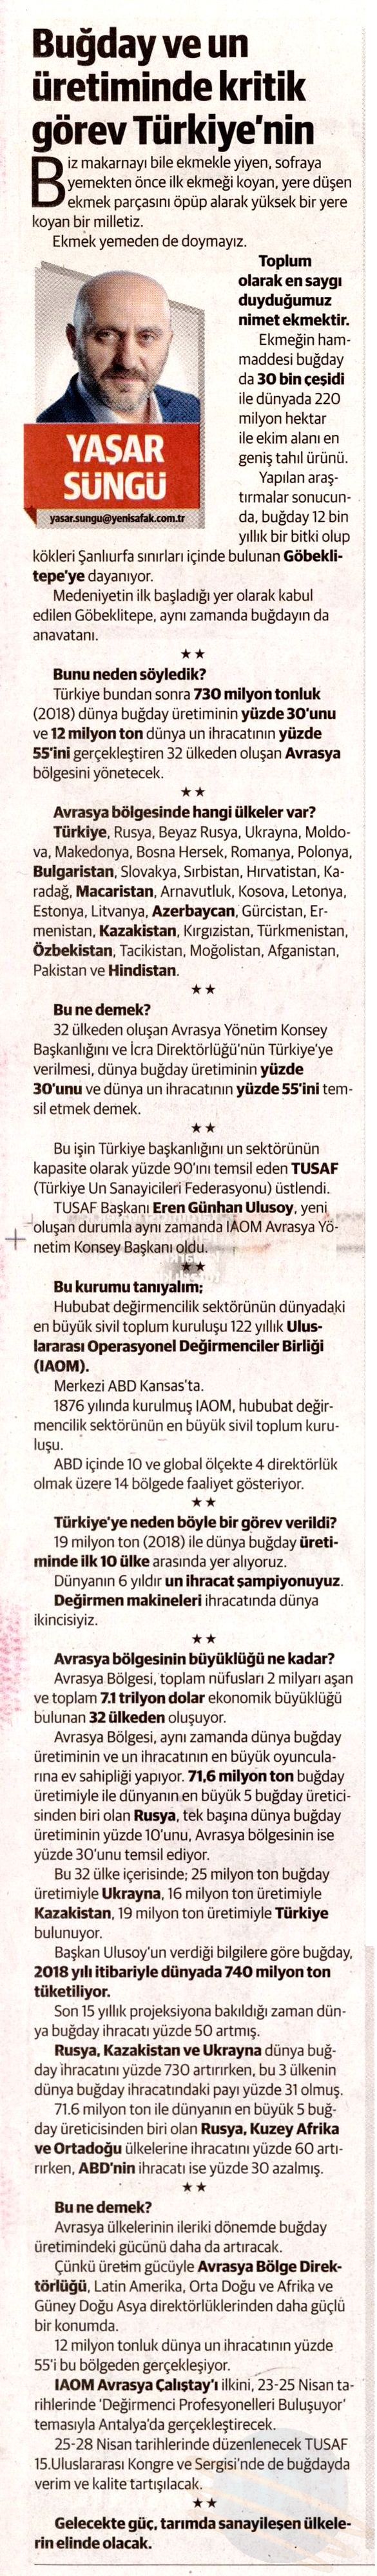 TUSAF Yeni Şafak 13.03.2019.jpg